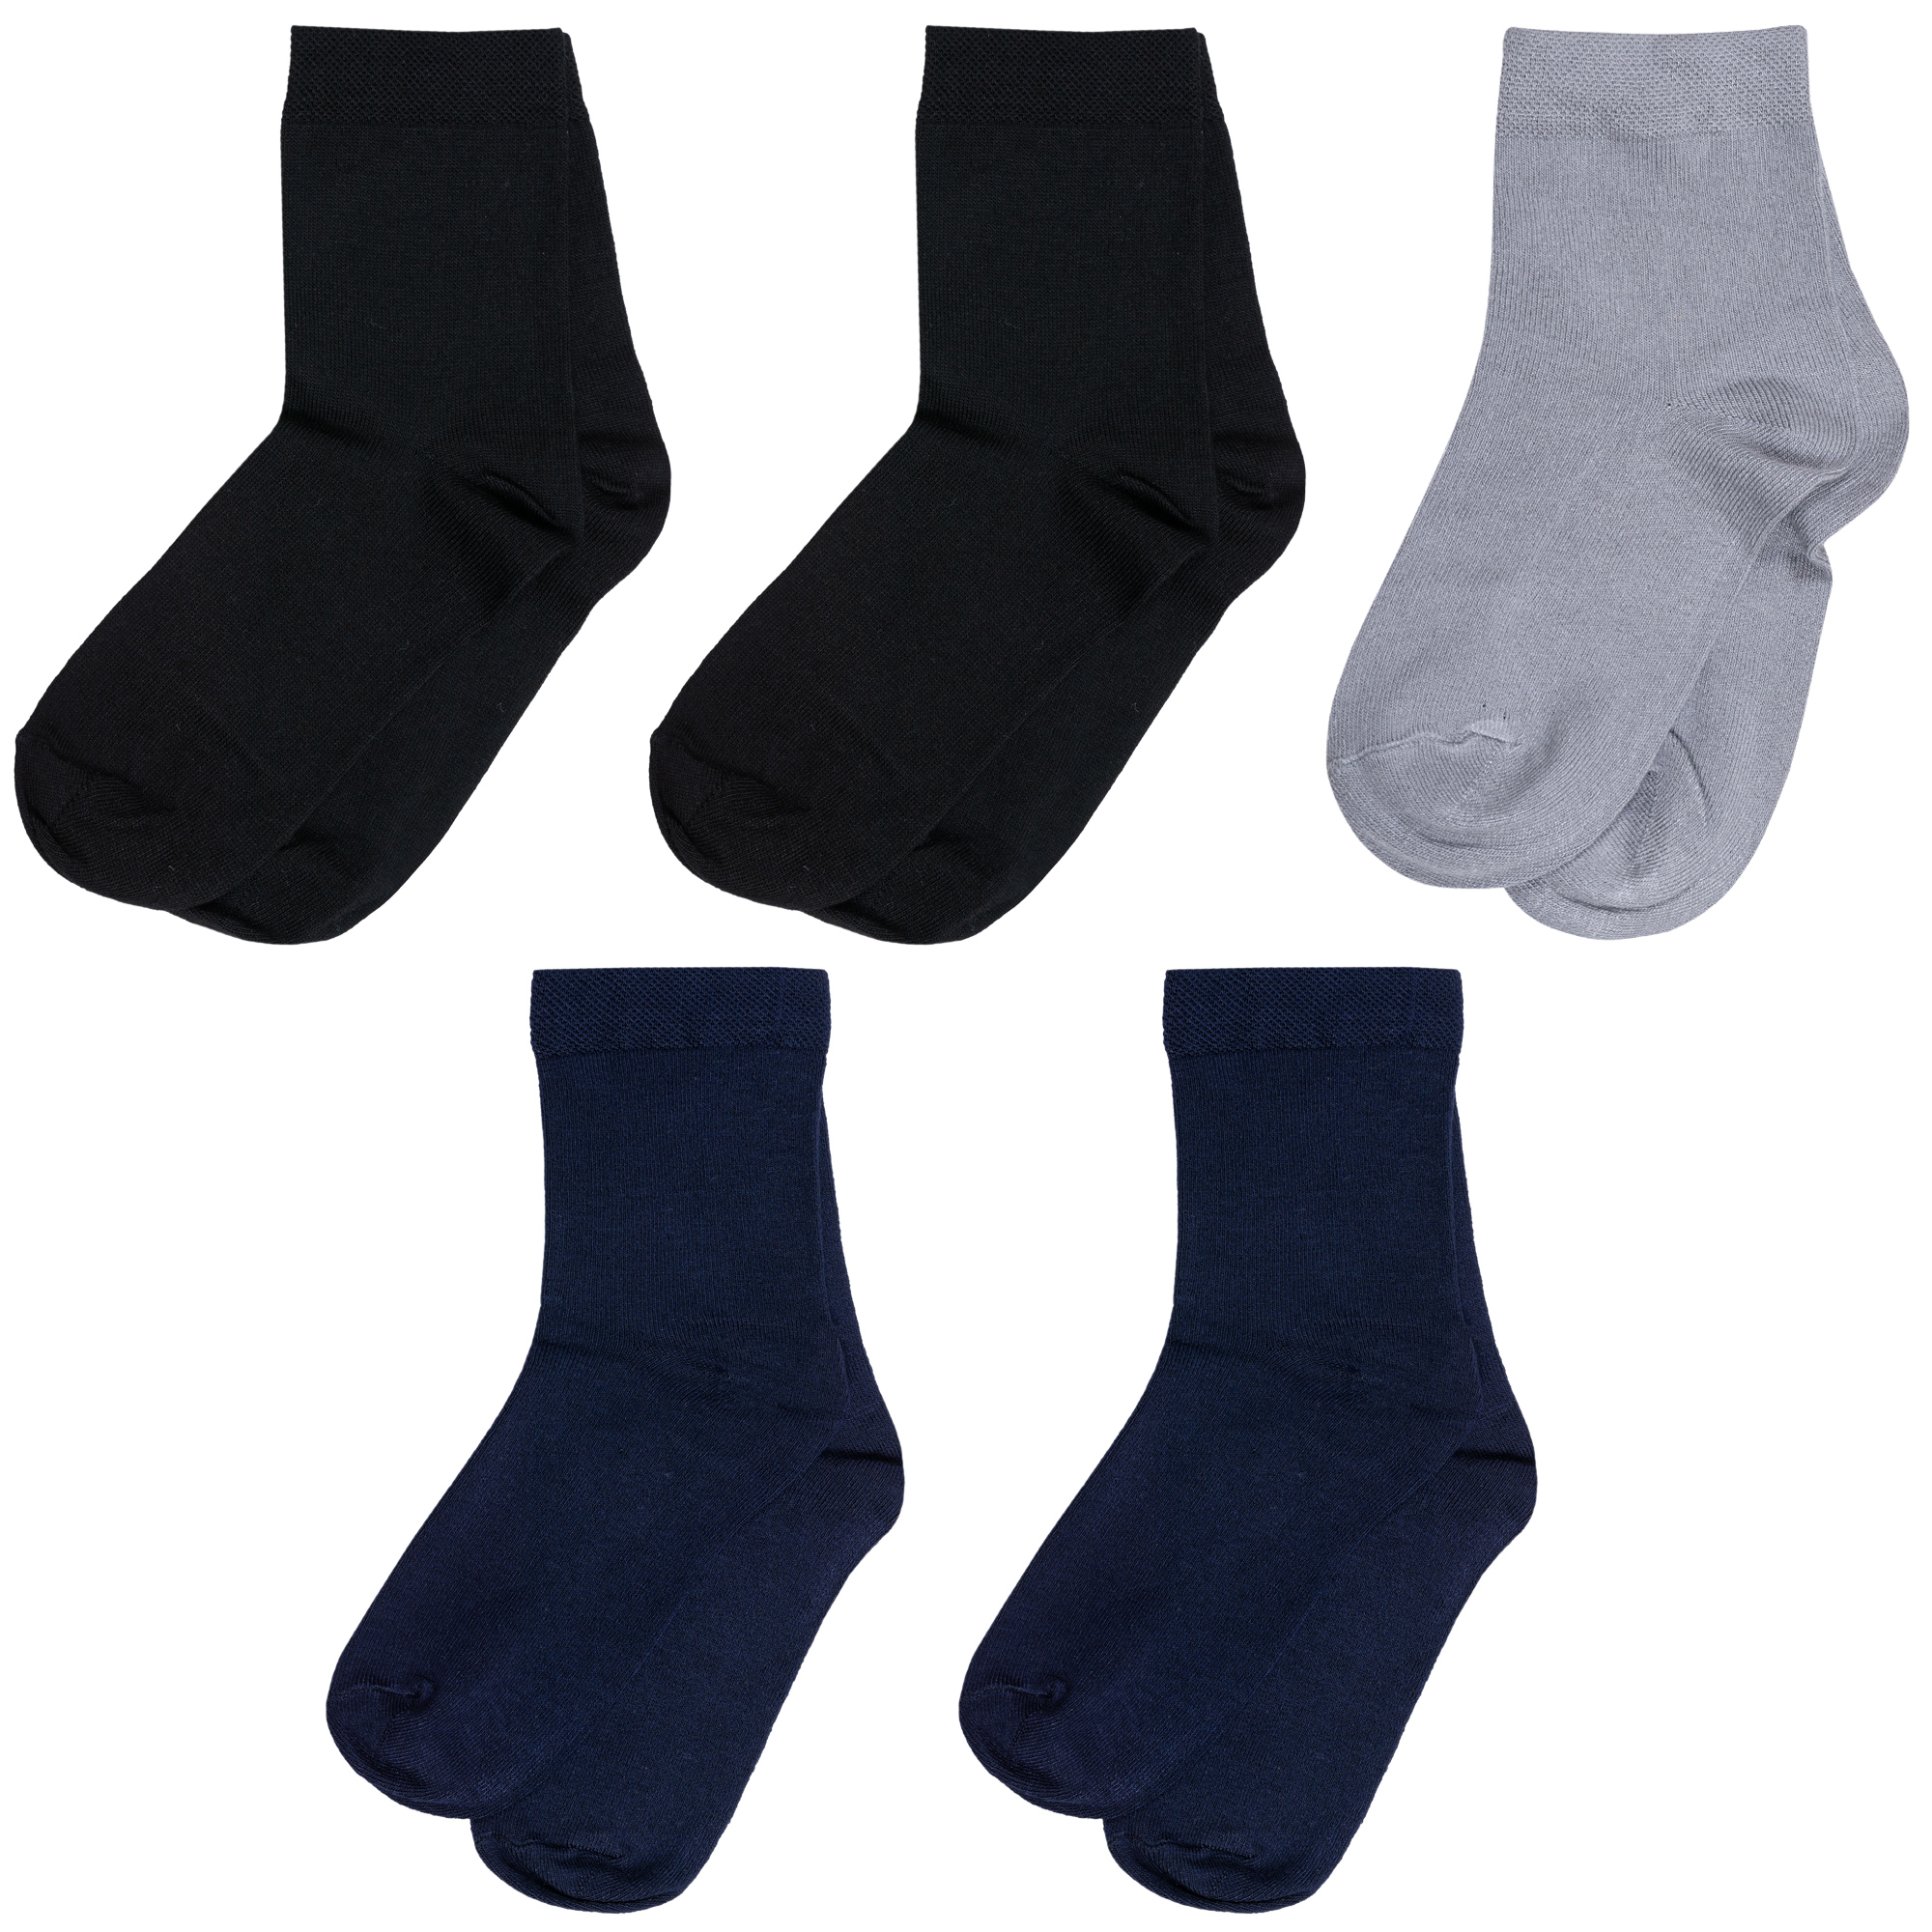 Носки для мальчиков ХОХ 5-D-1425 цв. синий; серый; черный р. 26-28